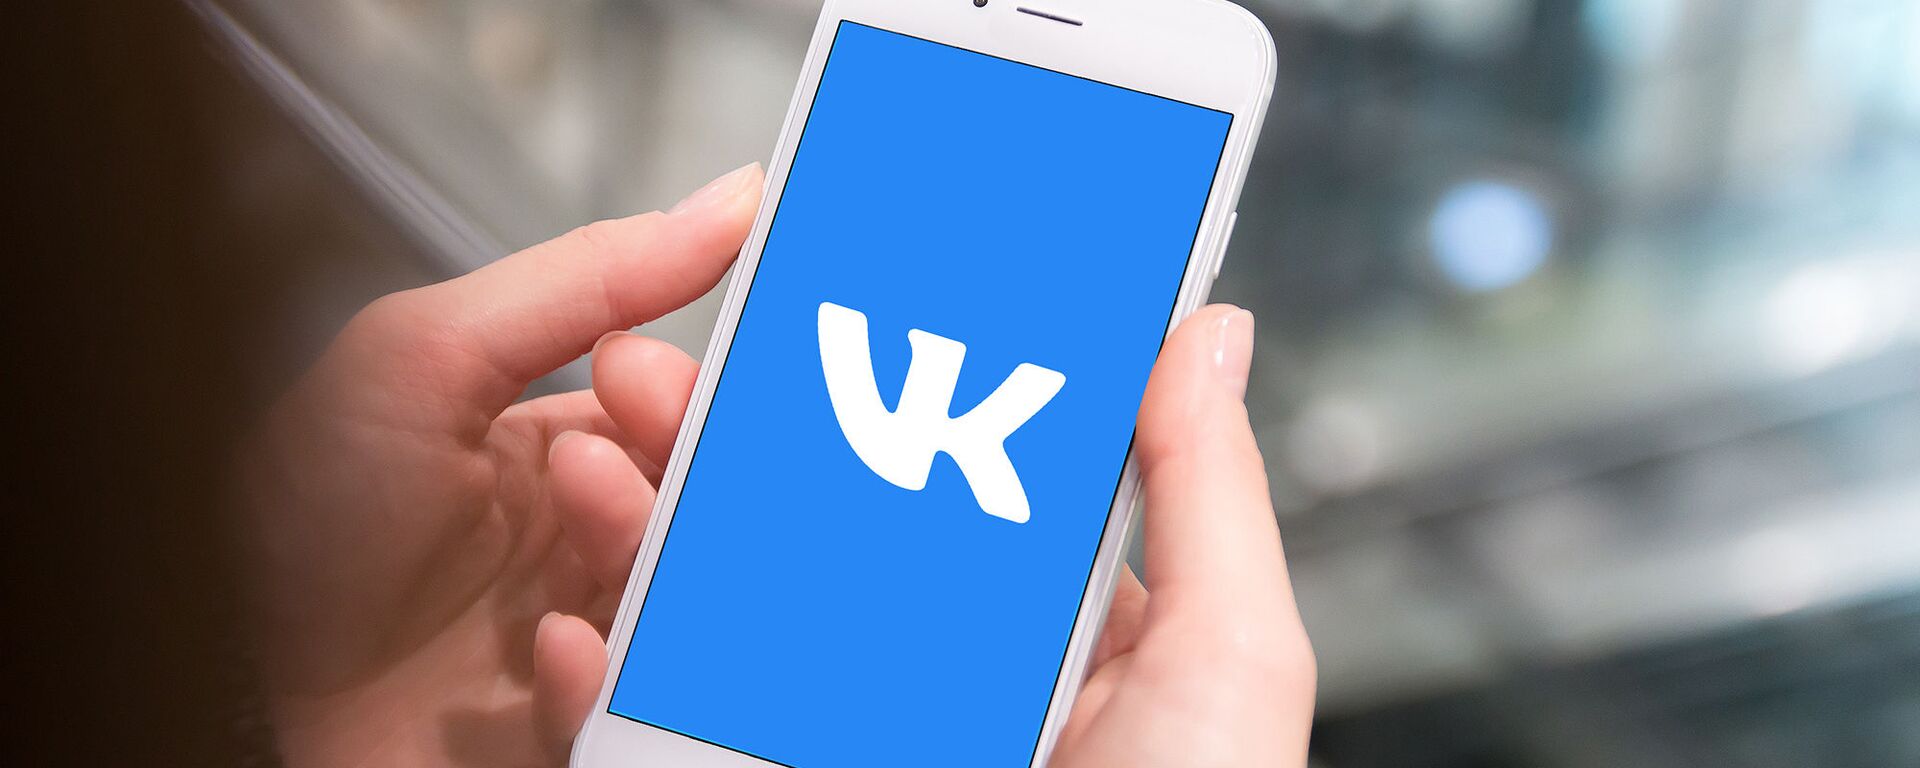 Как «ВКонтакте» будет усилять защиту личной информации? - Sputnik Азербайджан, 1920, 07.03.2022